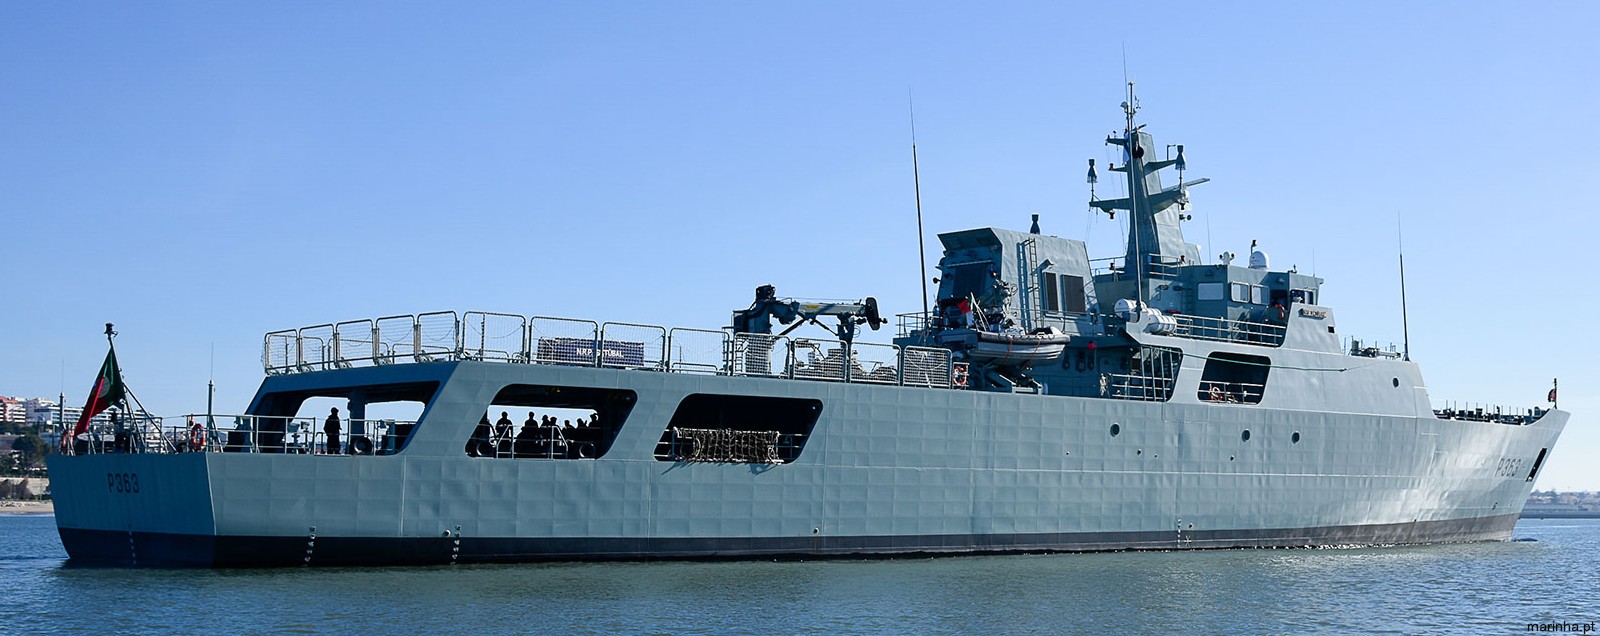 p-363 nrp setubal viana do castelo class offshore patrol vessel opv portuguese navy marinha 02